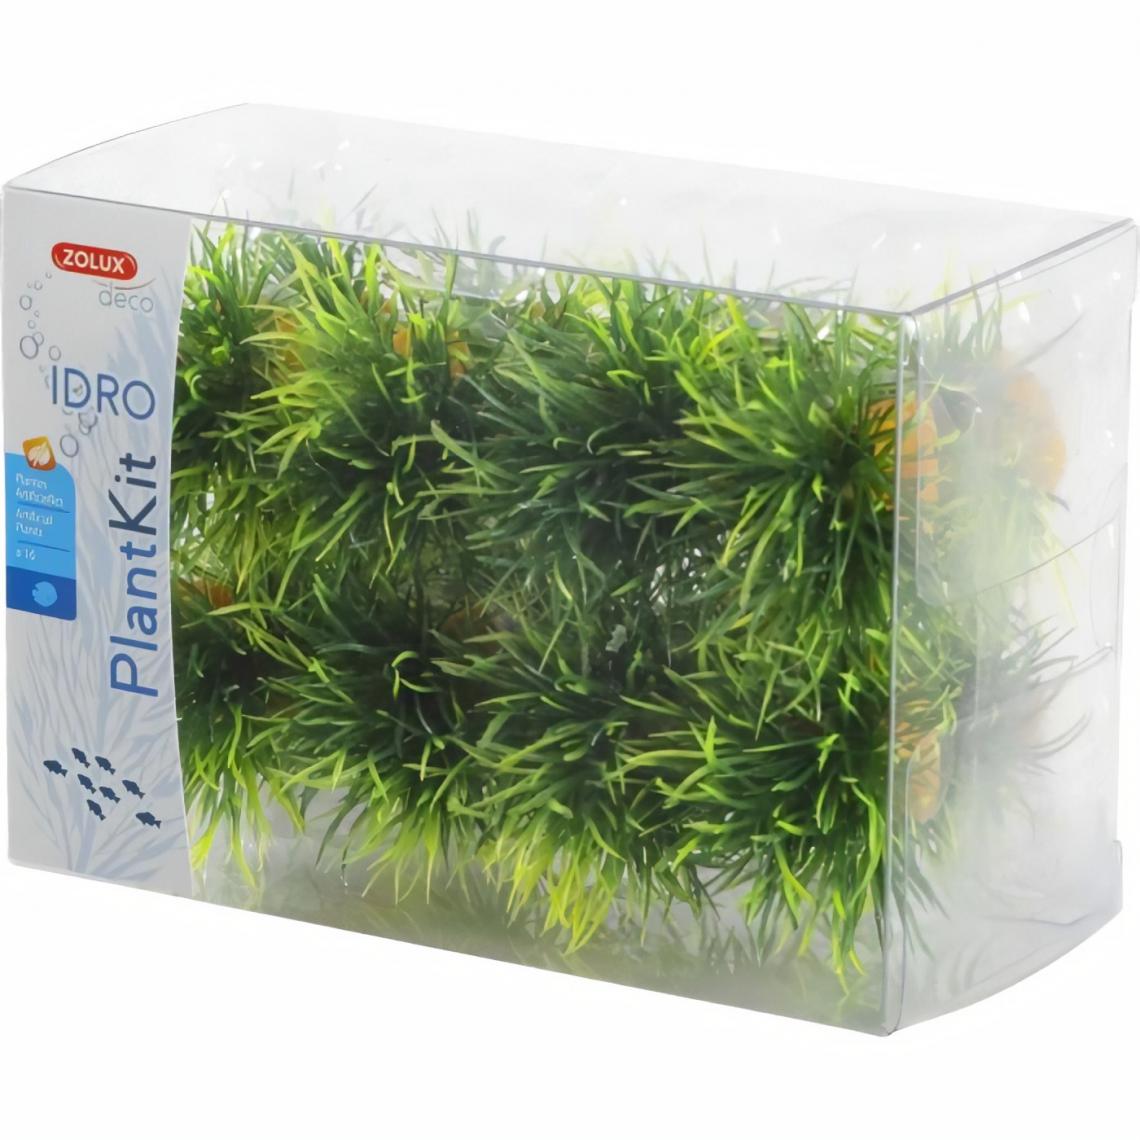 Zolux - ZOLUX Kit de 16 plantes artificielles gazonnantes Idro - Pour aquarium - Décoration aquarium